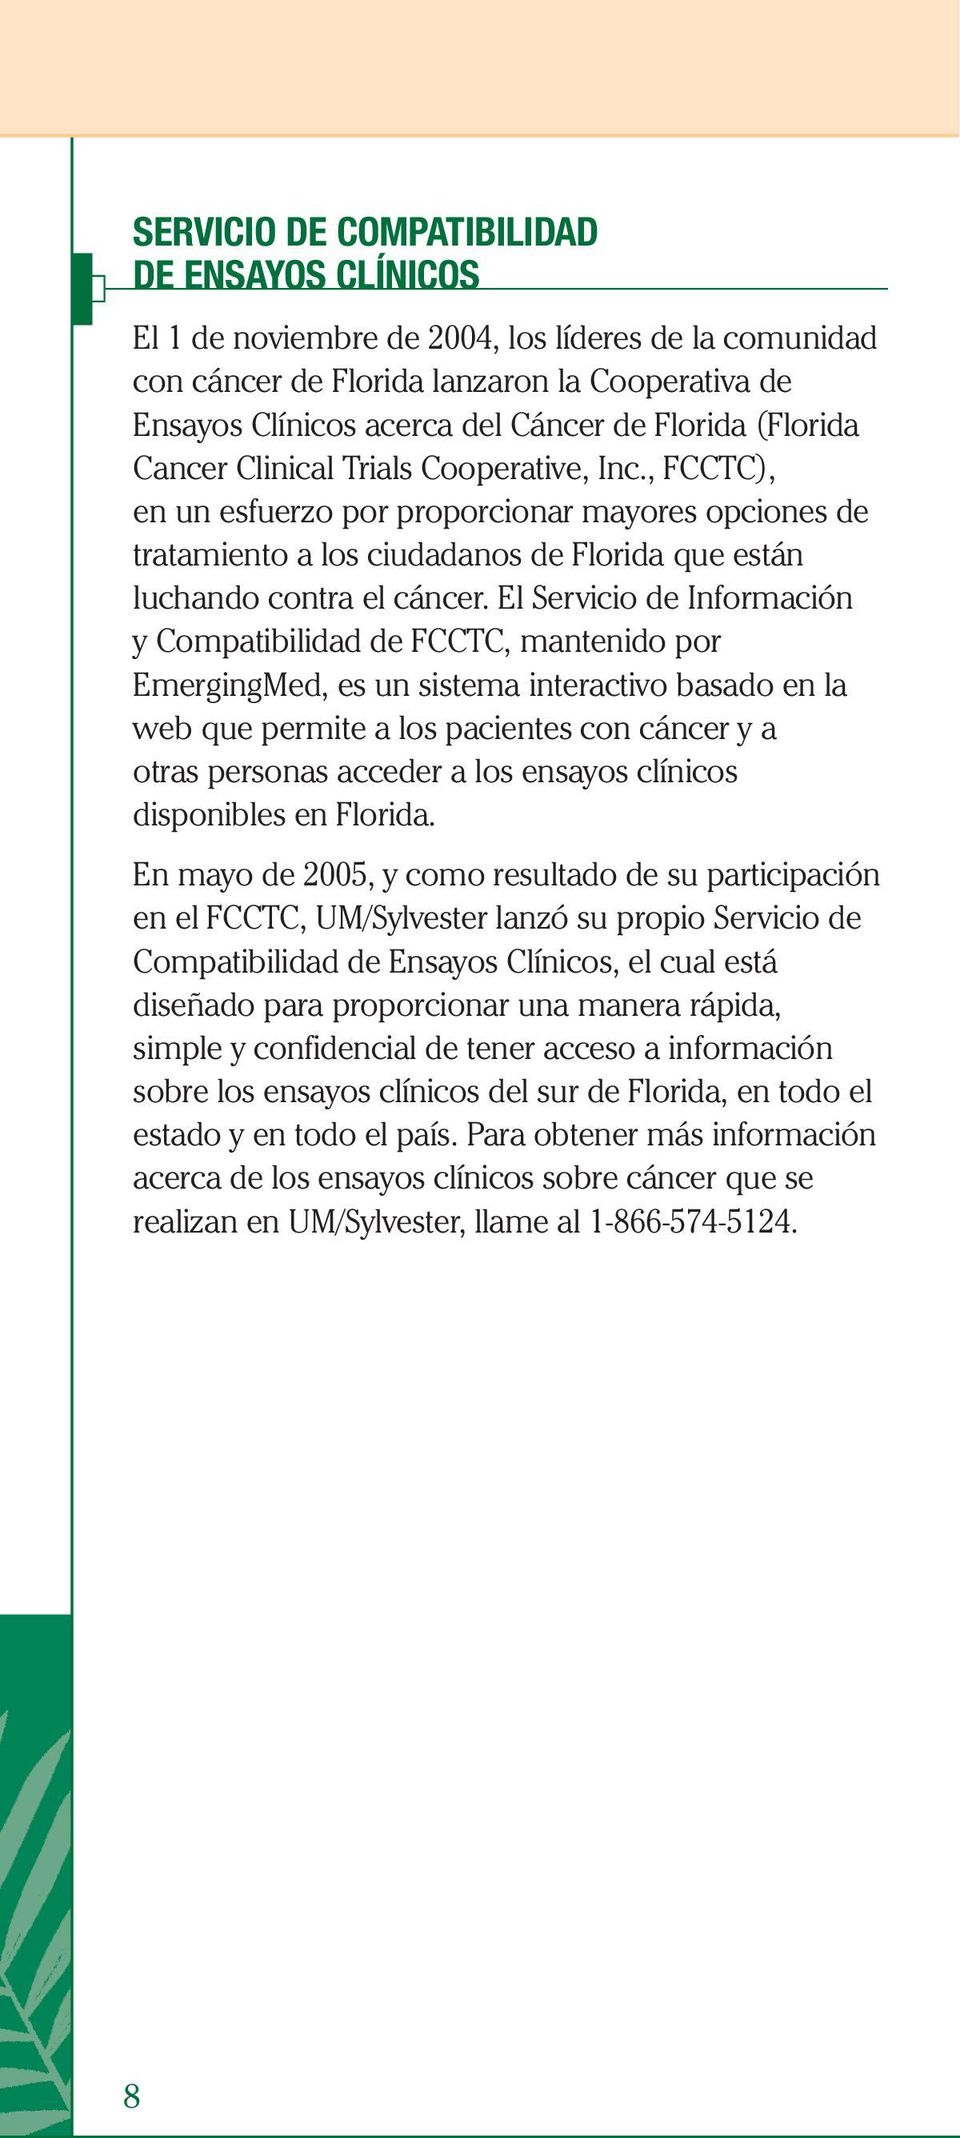 El Servicio de Información y Compatibilidad de FCCTC, mantenido por EmergingMed, es un sistema interactivo basado en la web que permite a los pacientes con cáncer y a otras personas acceder a los